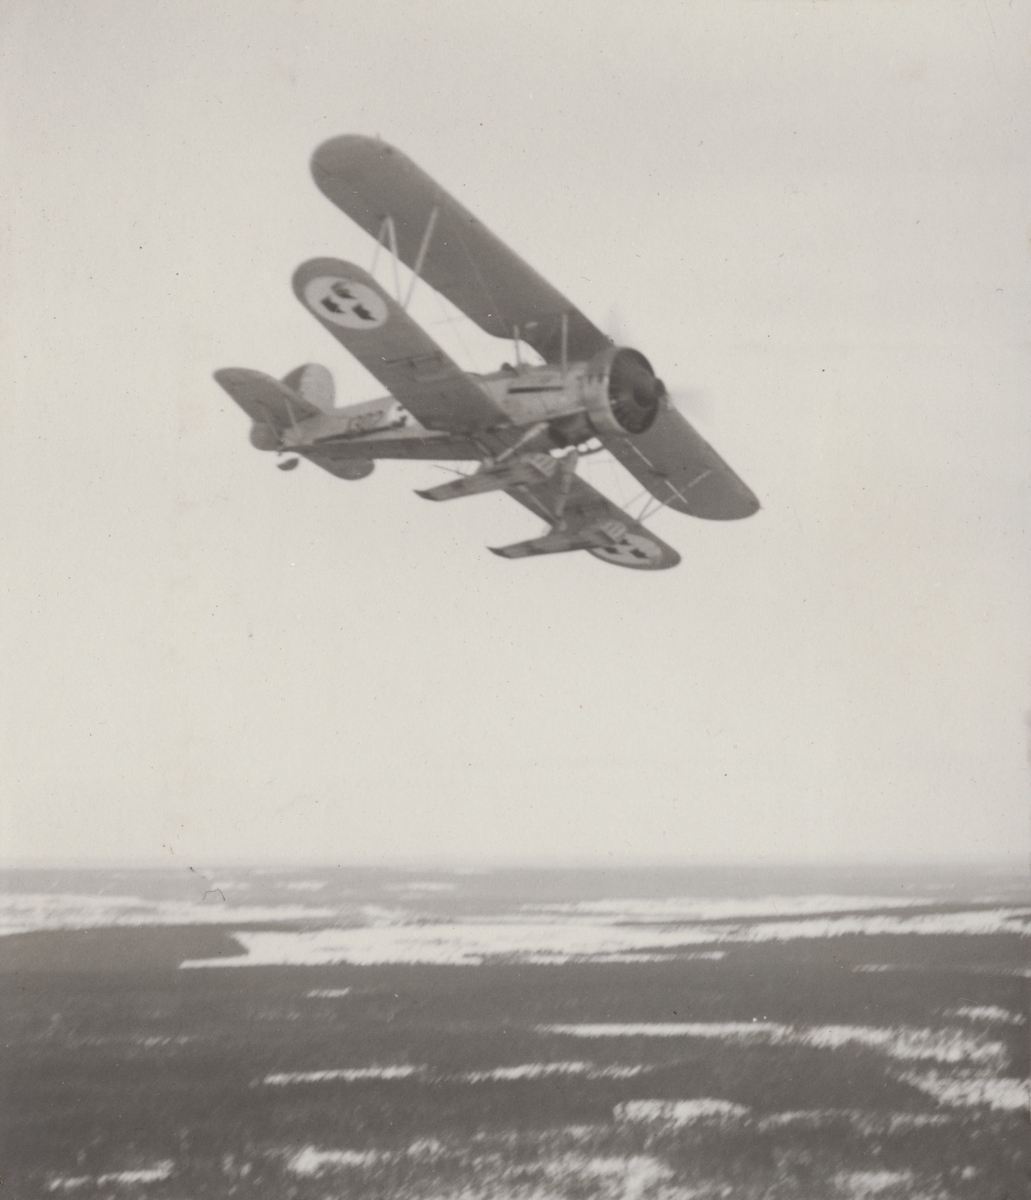 Flygplan B 4 Hawker Hart i luften över snötäckt landskap. Flygbild tagen under svängning.

Text vid foto: "B 4"